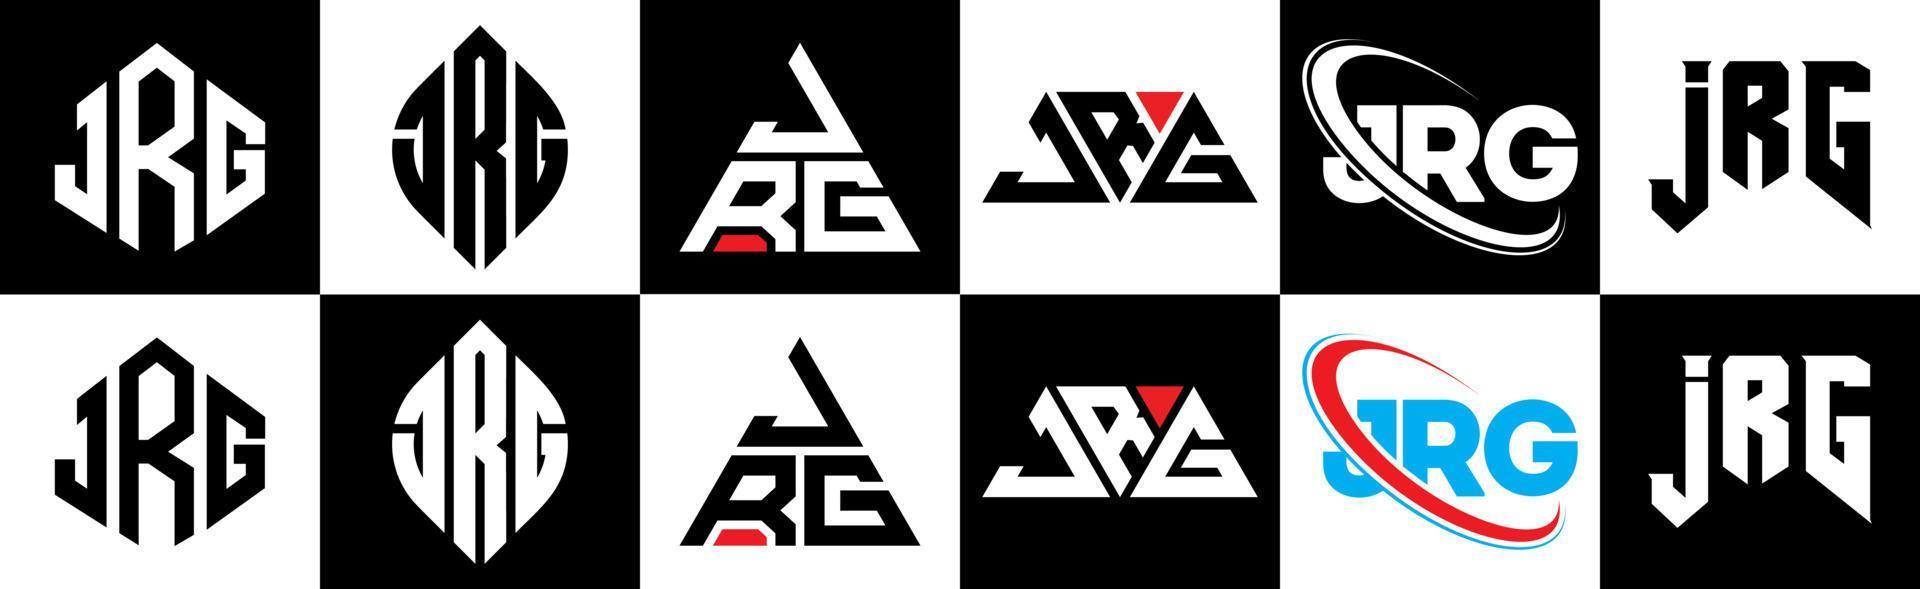 design de logotipo de carta jrg em seis estilos. jrg polígono, círculo, triângulo, hexágono, estilo plano e simples com logotipo de carta de variação de cor preto e branco definido em uma prancheta. logotipo minimalista e clássico jrg vetor